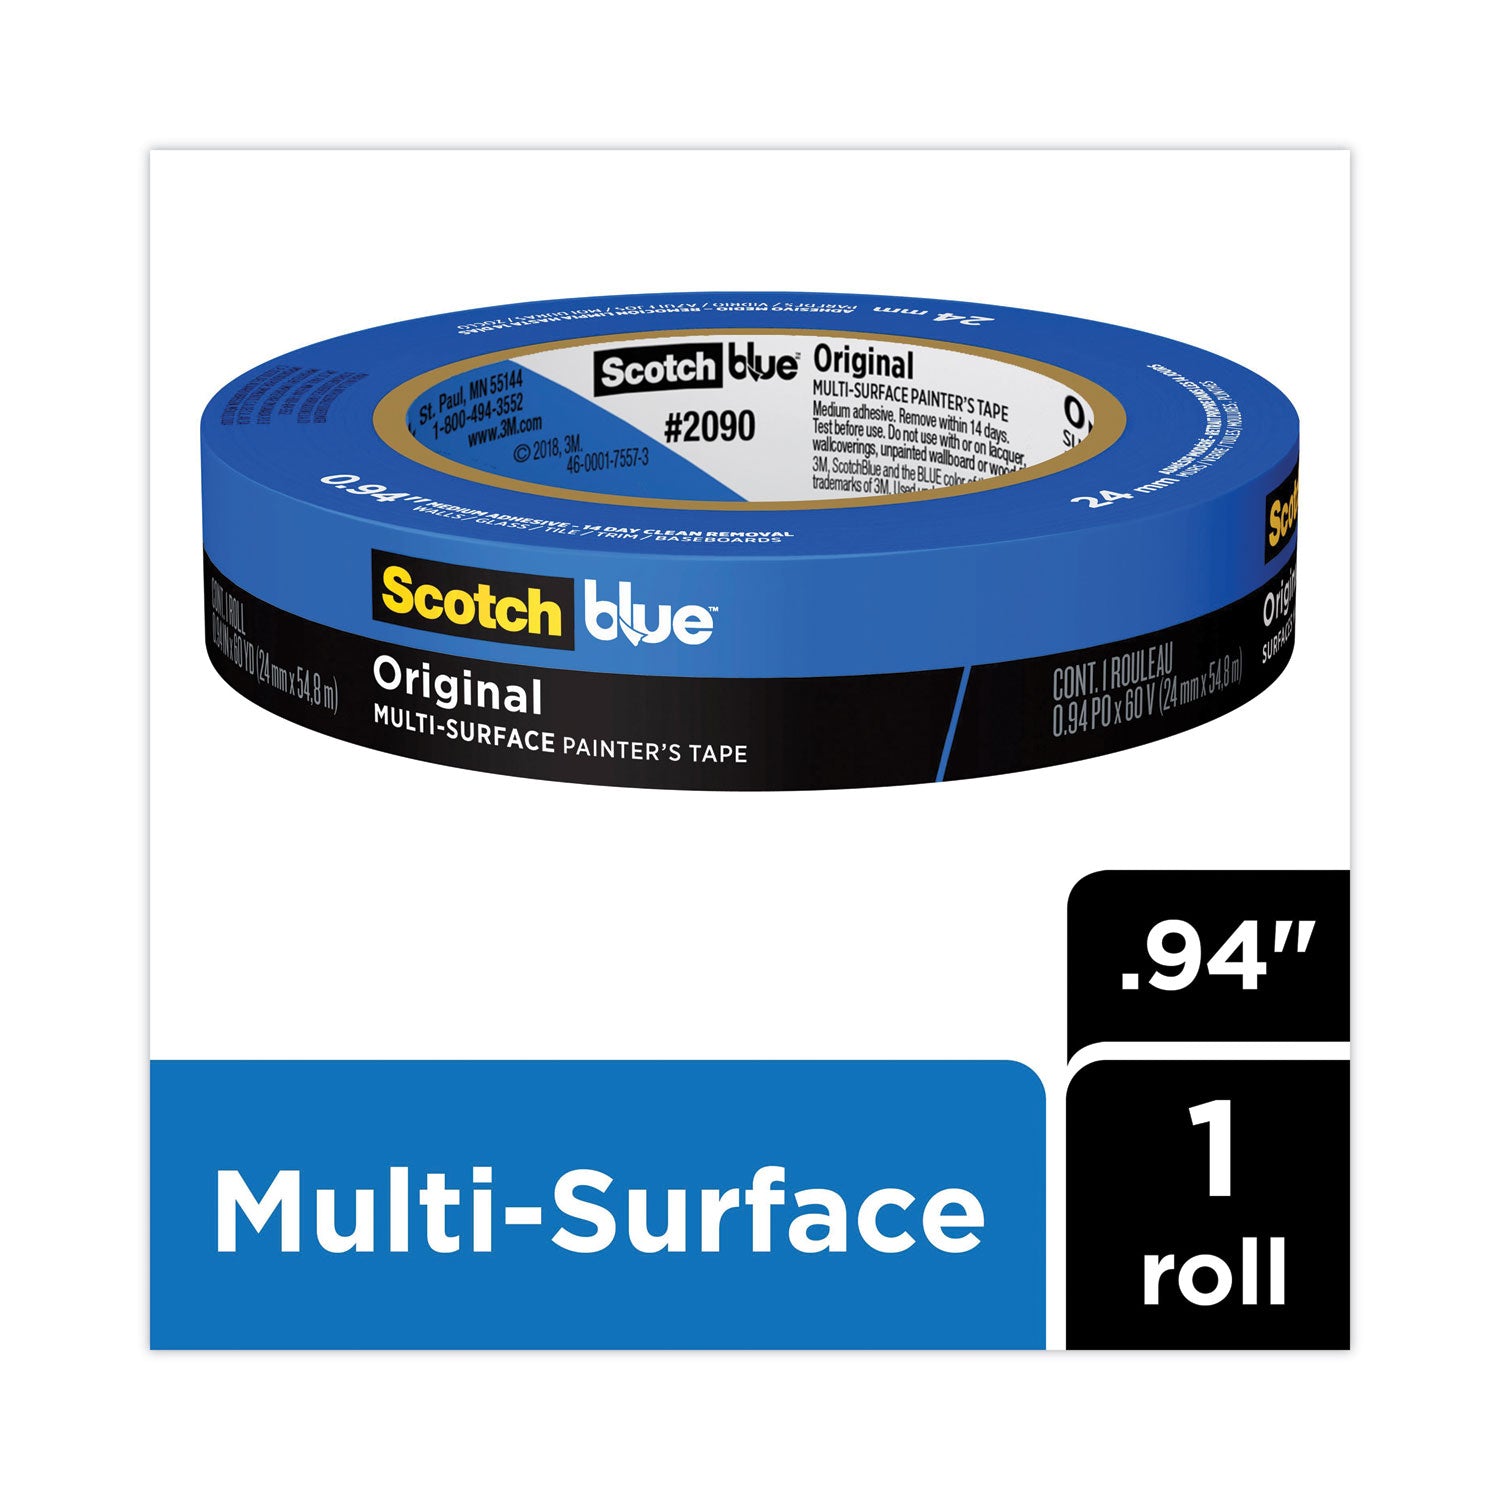 Original Multi-Surface Painter's Tape, 3" Core, 0.94" x 60 yds, Blue - 